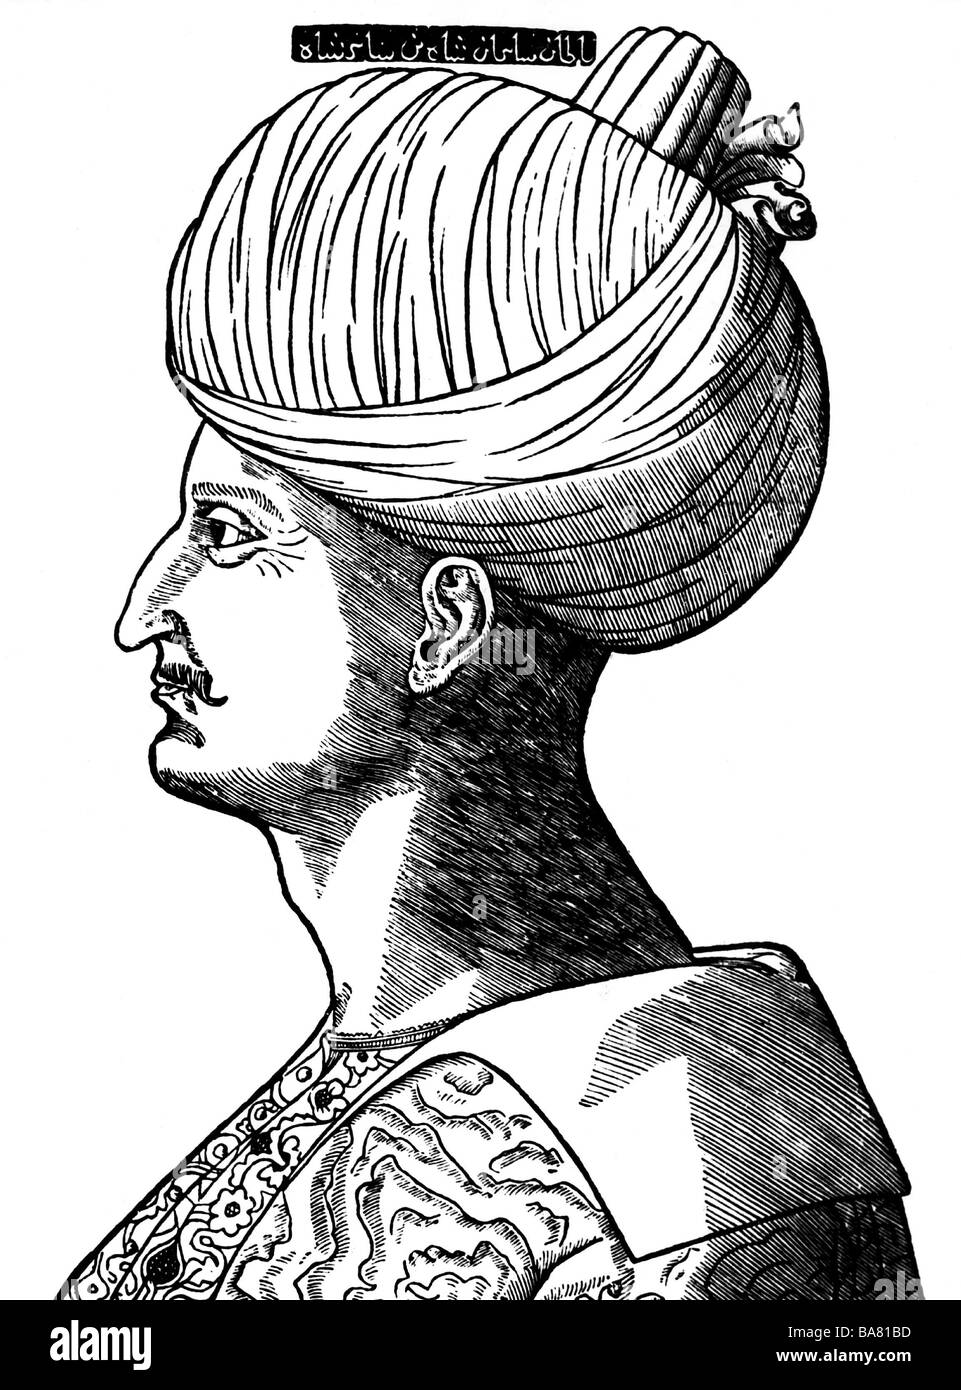 Suleiman ich "der prächtige", ca. 1495 - 27.4.1566, Sultan des Osmanischen Reiches 1520-1566, Porträt, Holzschnitt, 16. Jahrhundert Stockfoto